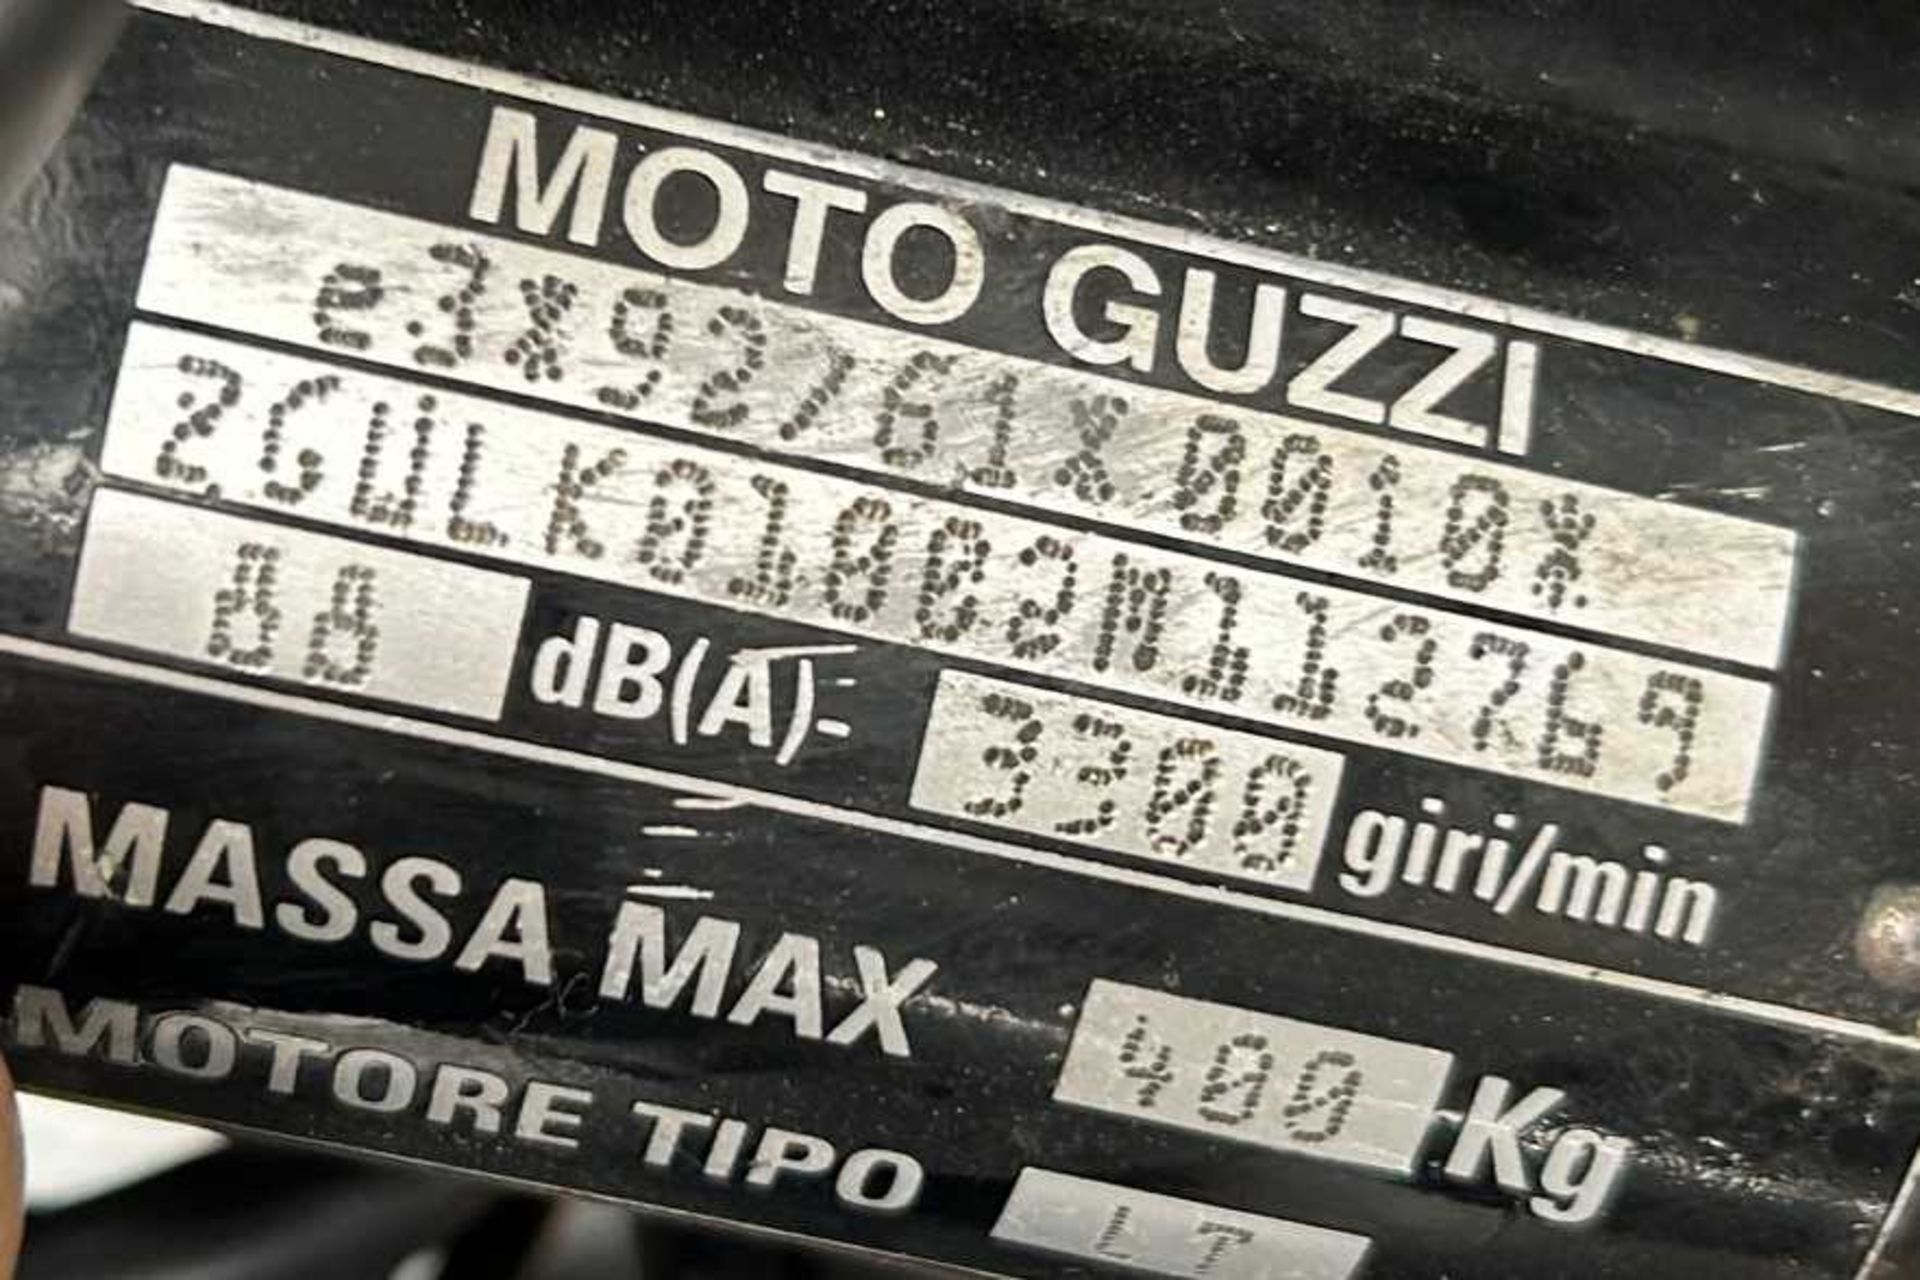 2004 Moto Guzzi Nevada Custom model with backrest and engine bars - Image 41 of 42